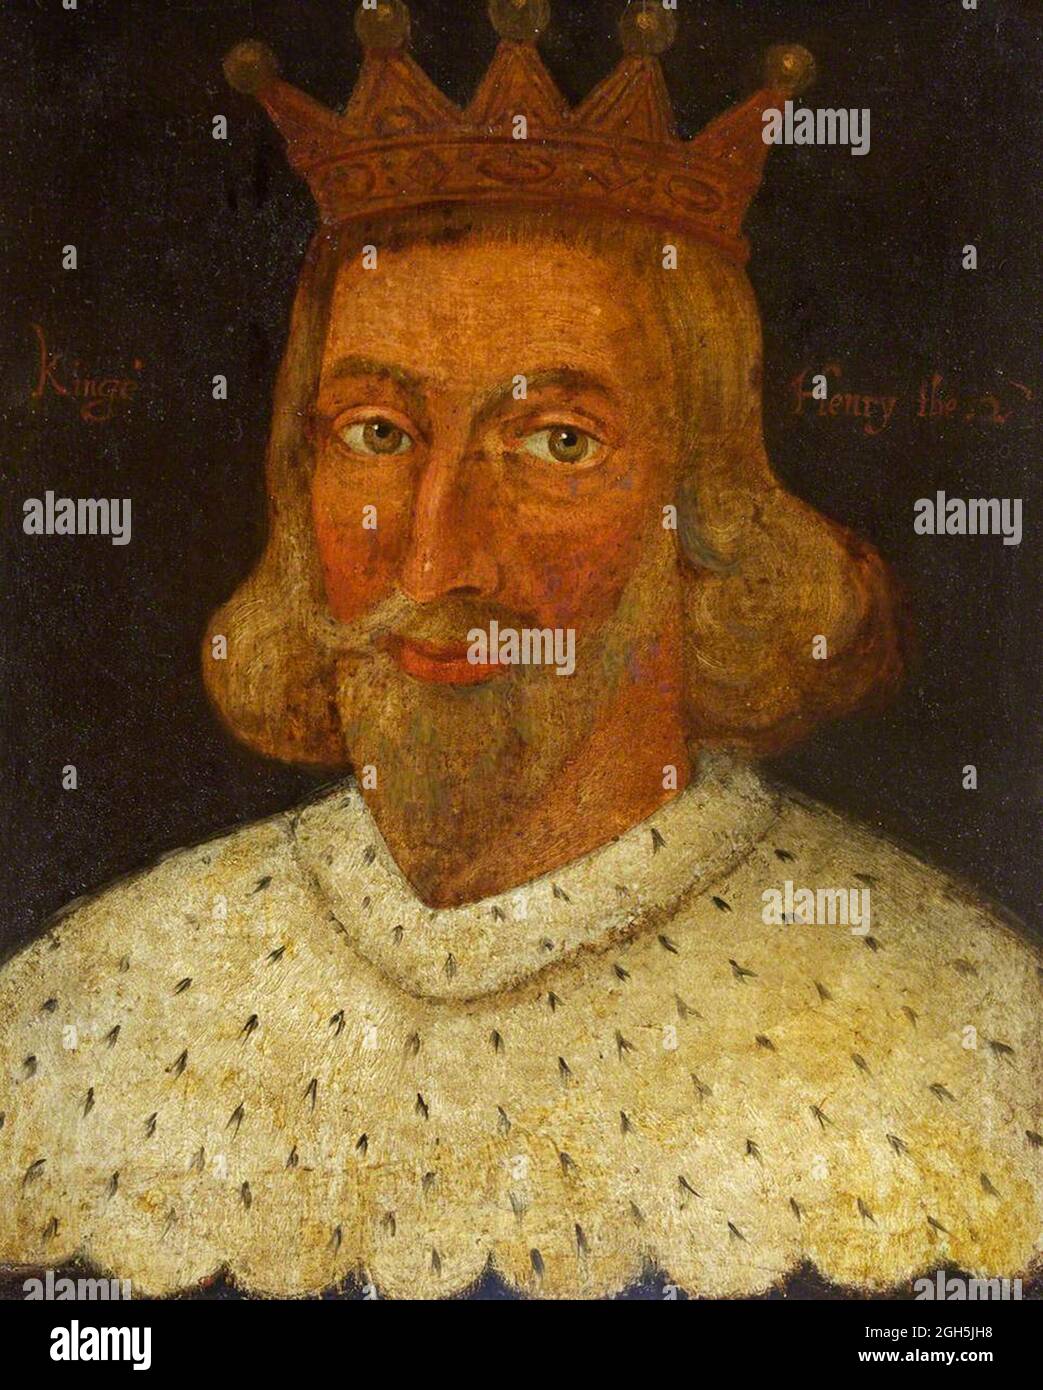 Ein Porträt von König Heinrich II. (Henry Curtmantle), der von 1154 bis 1189 König von England war Stockfoto